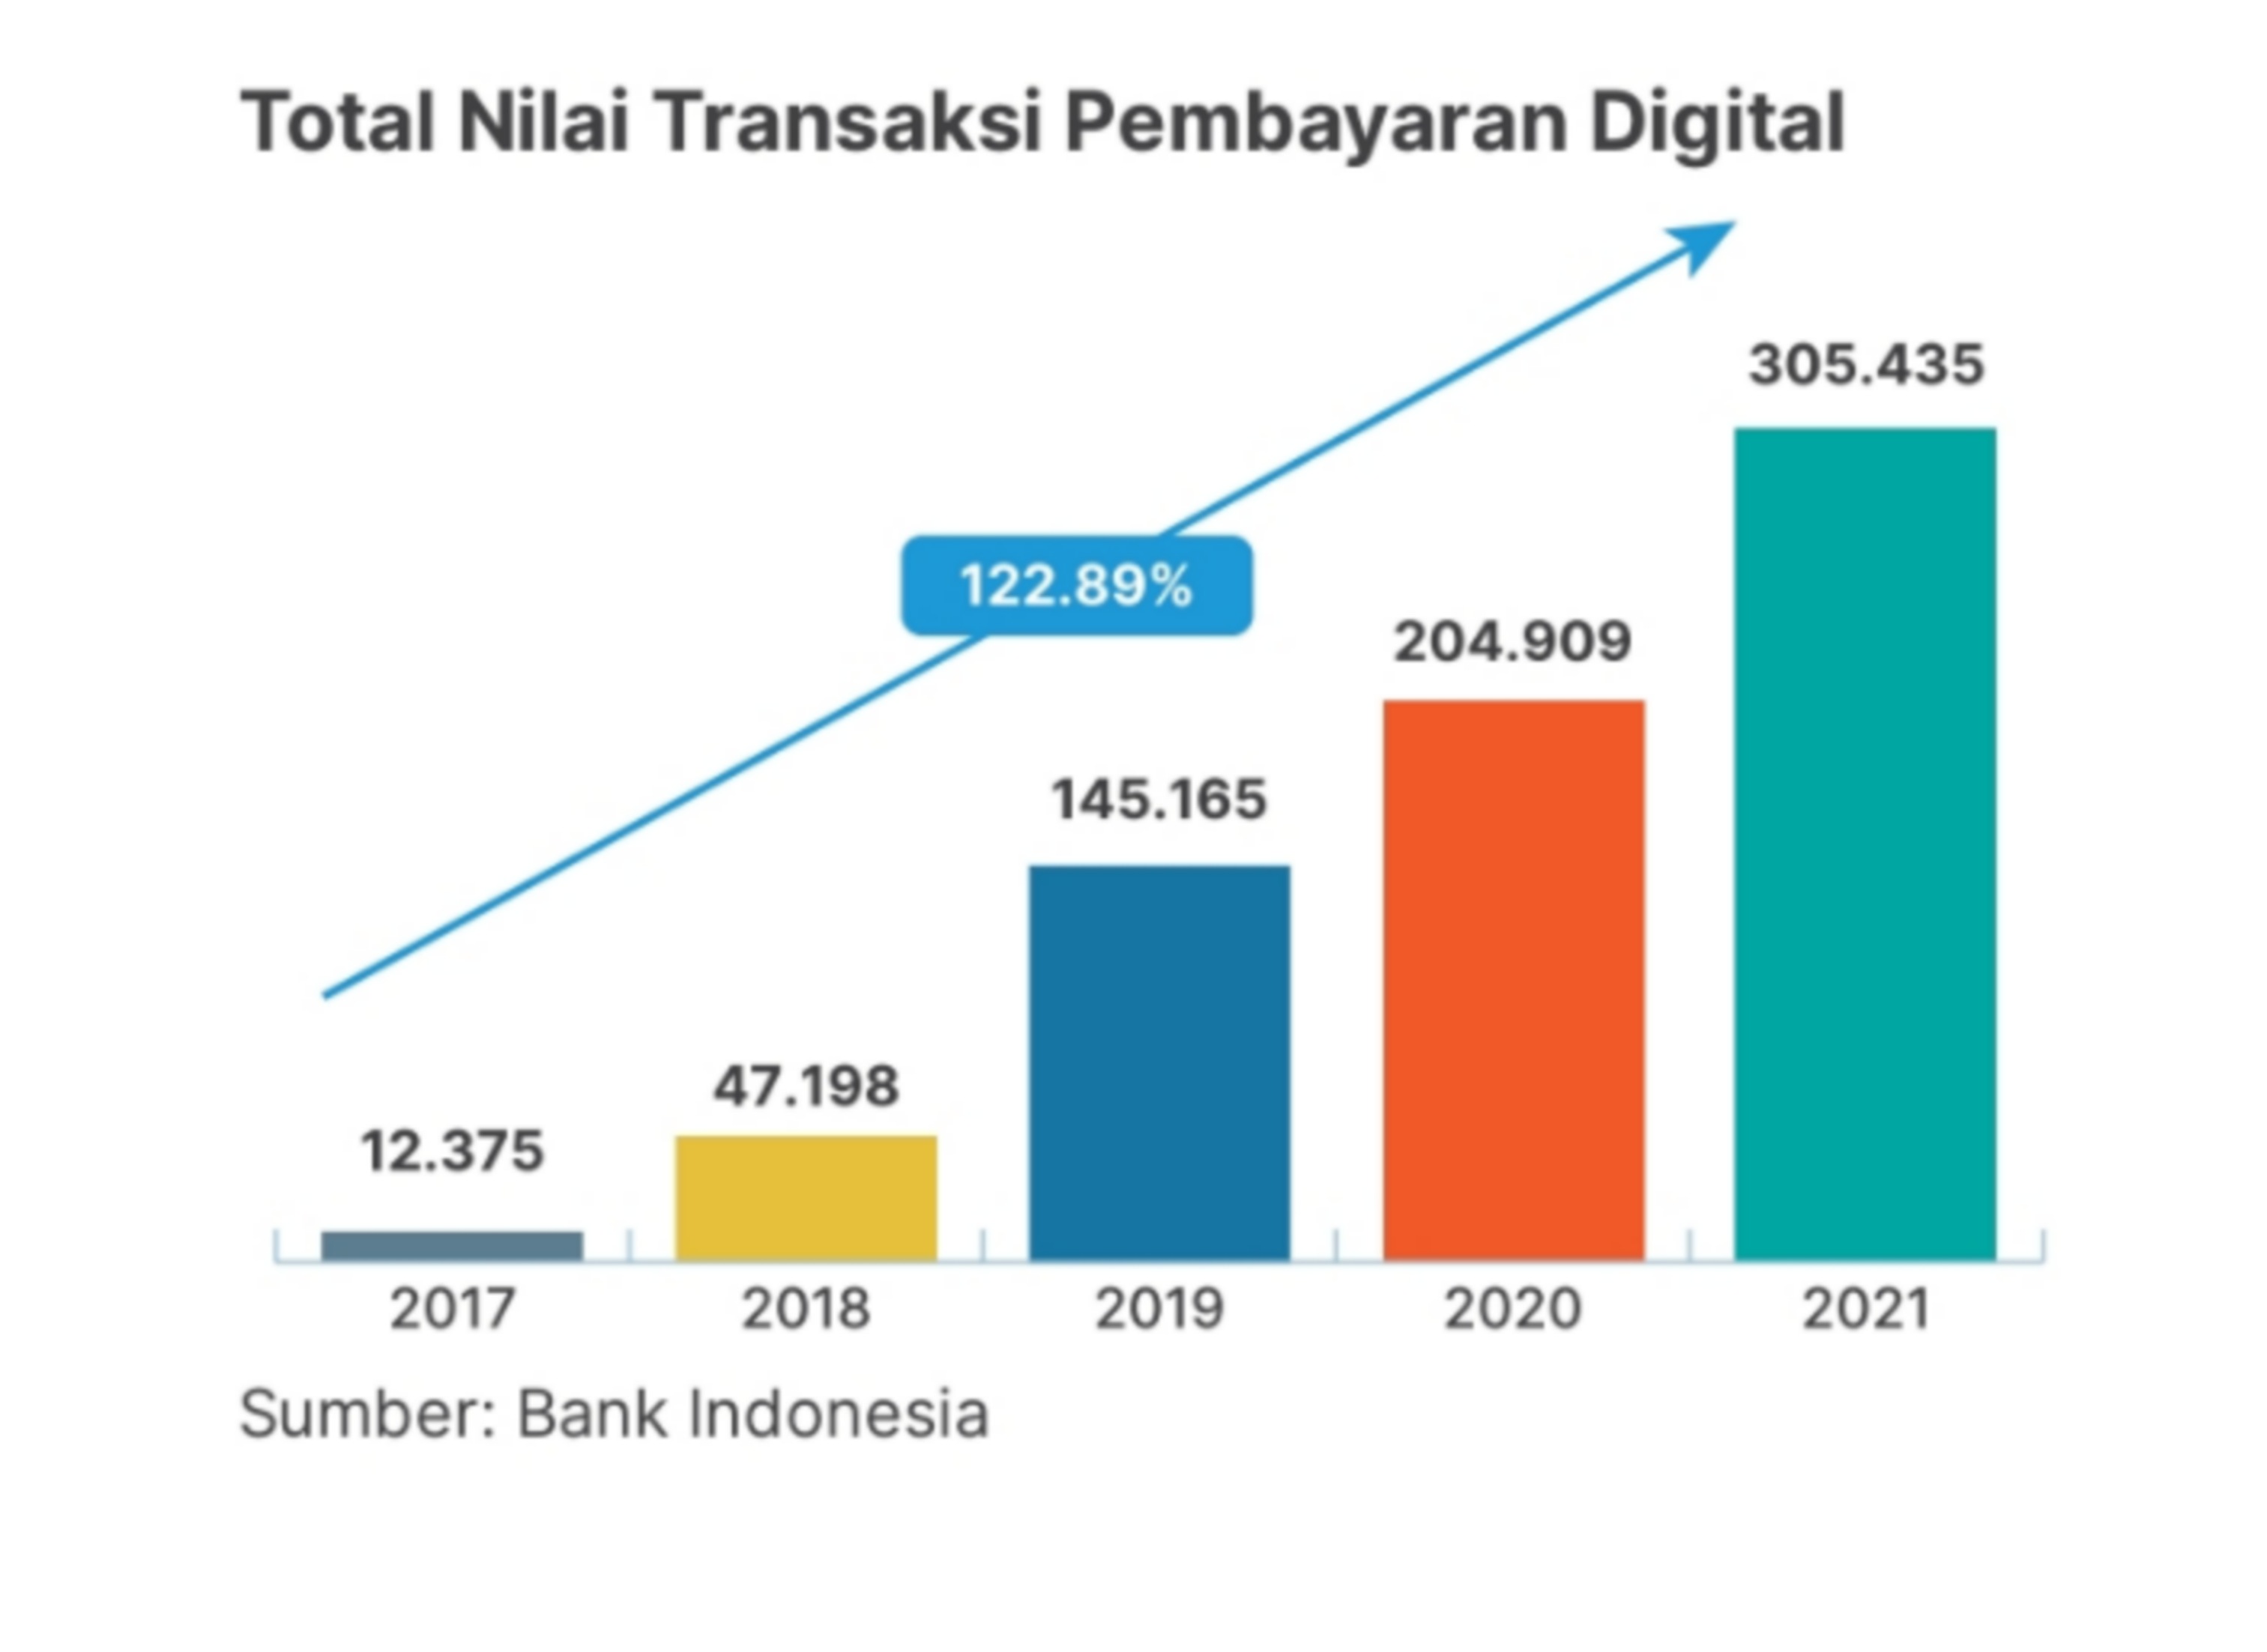 Total nilai transaksi pembayaran digital di Indonesia sejak 2017 hingga 2021